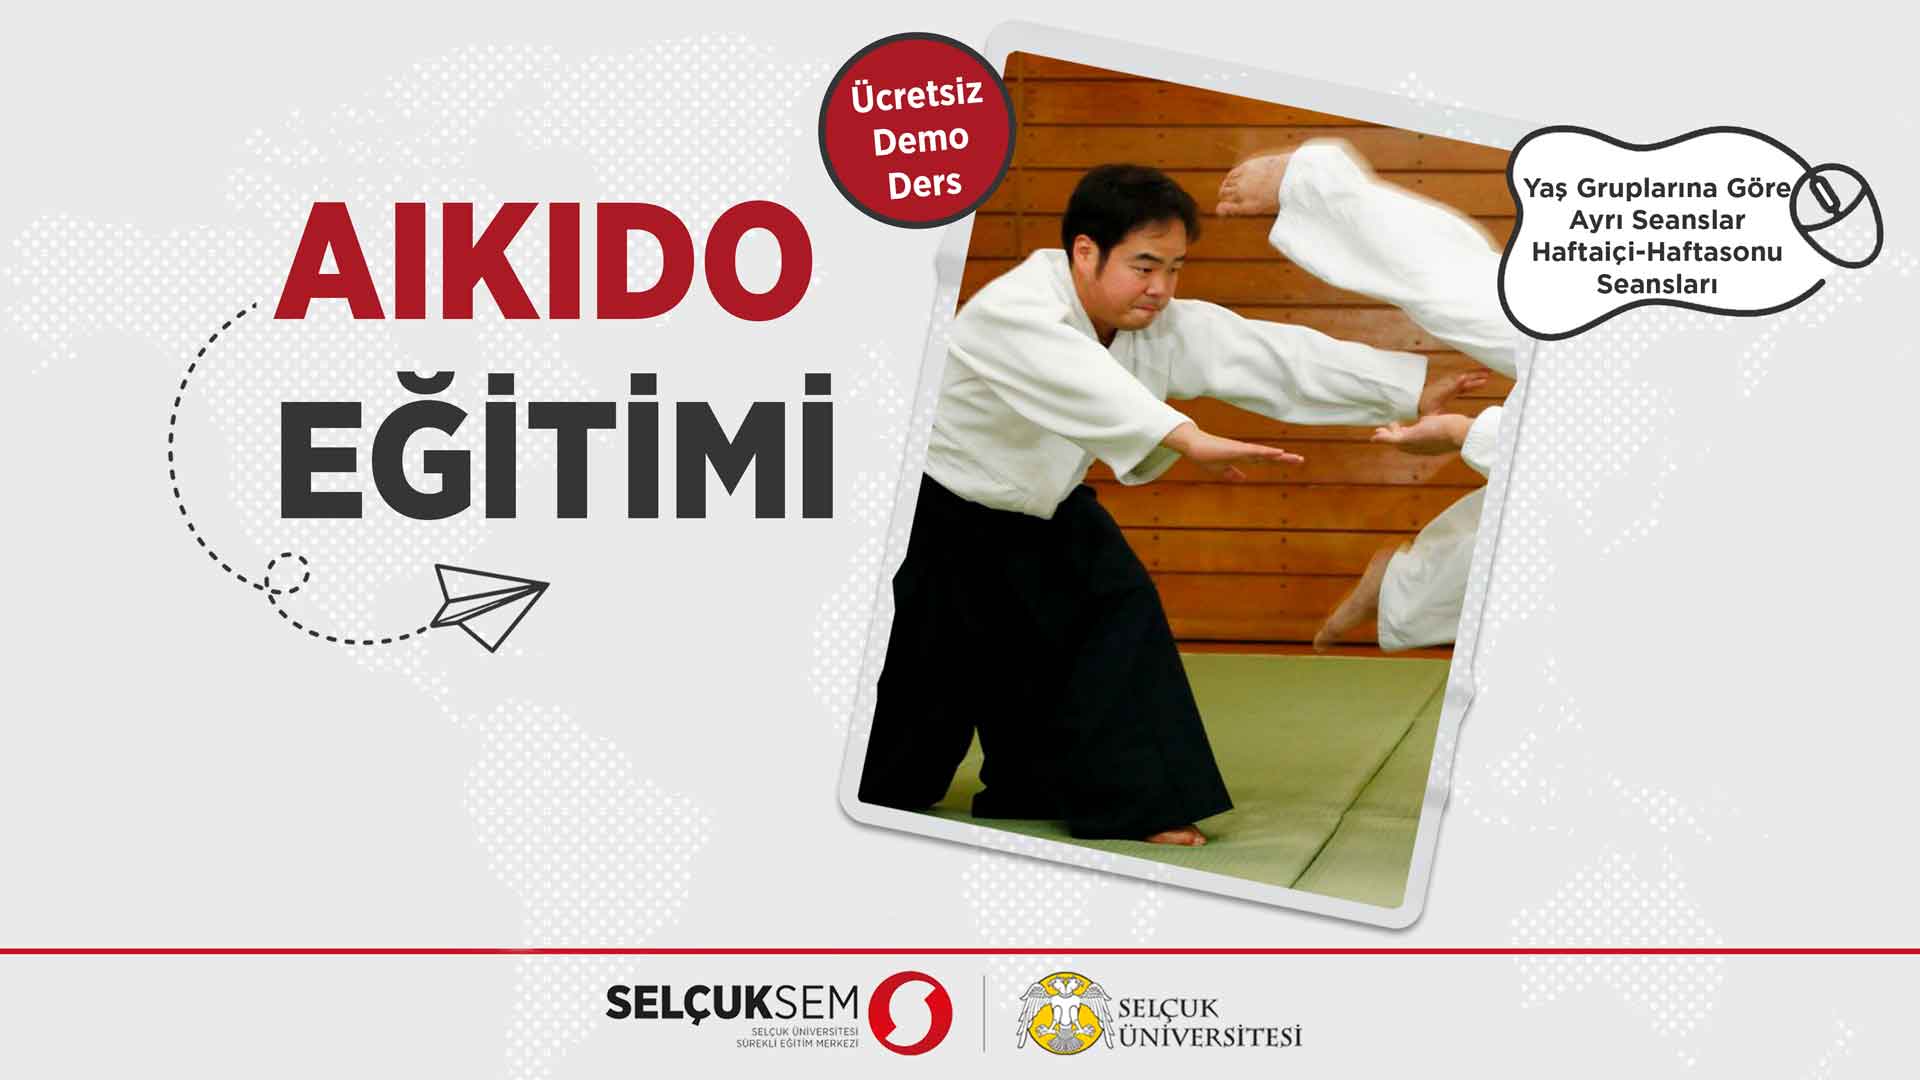 Aikido Eğitimi